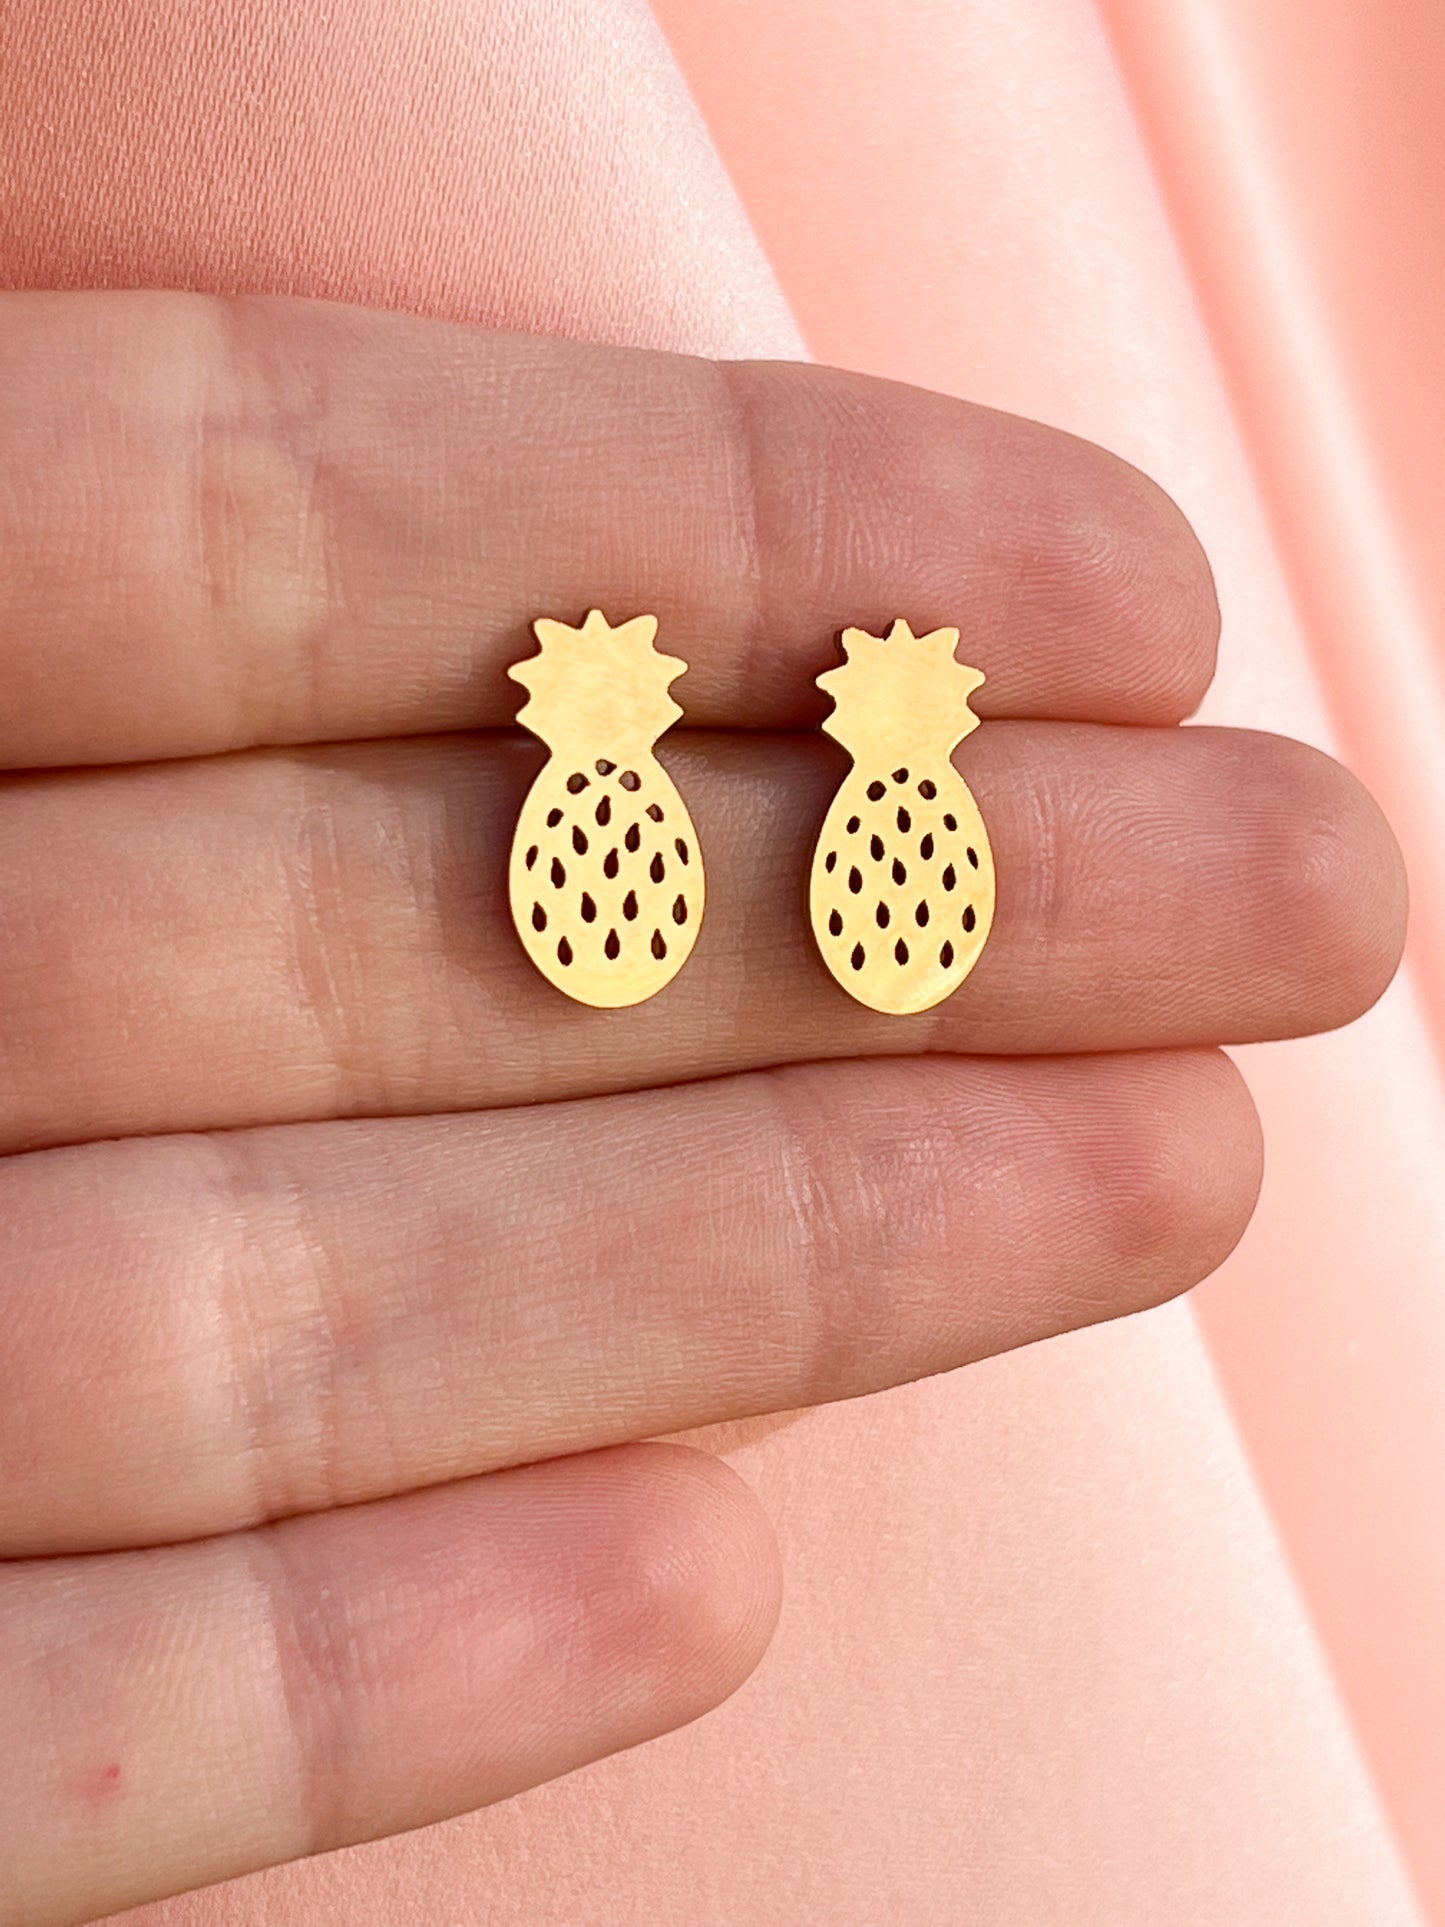 Hybrid stainless steel earrings, pineapple gold